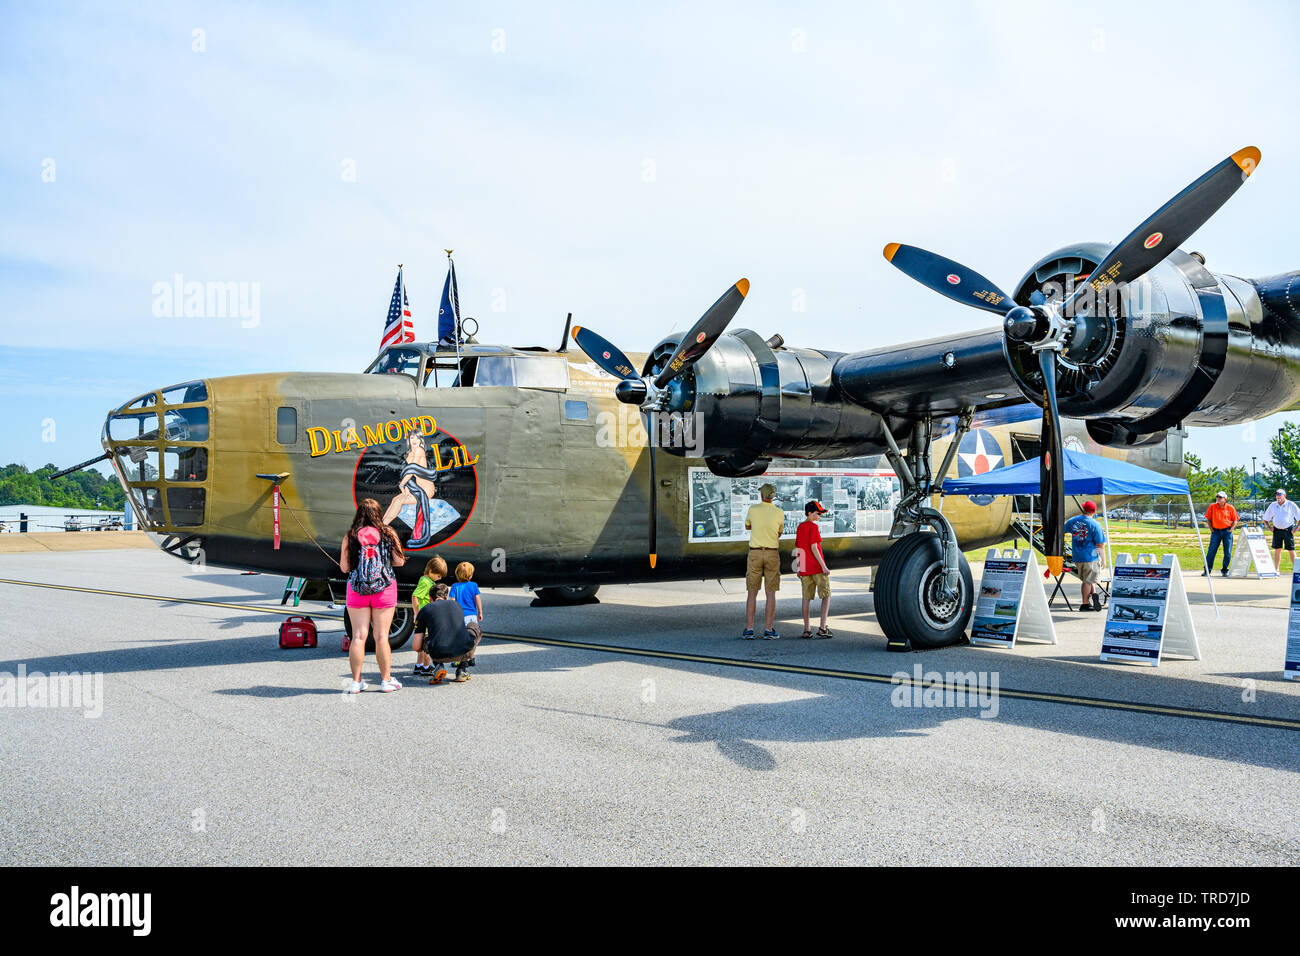 WWII oder WW2B-24 Liberator Bomber auf dem Display mit einer Familie oder Touristen, die Bilder von der Amerikanischen WWII Bomber in Montgomery Alabama, USA. Stockfoto